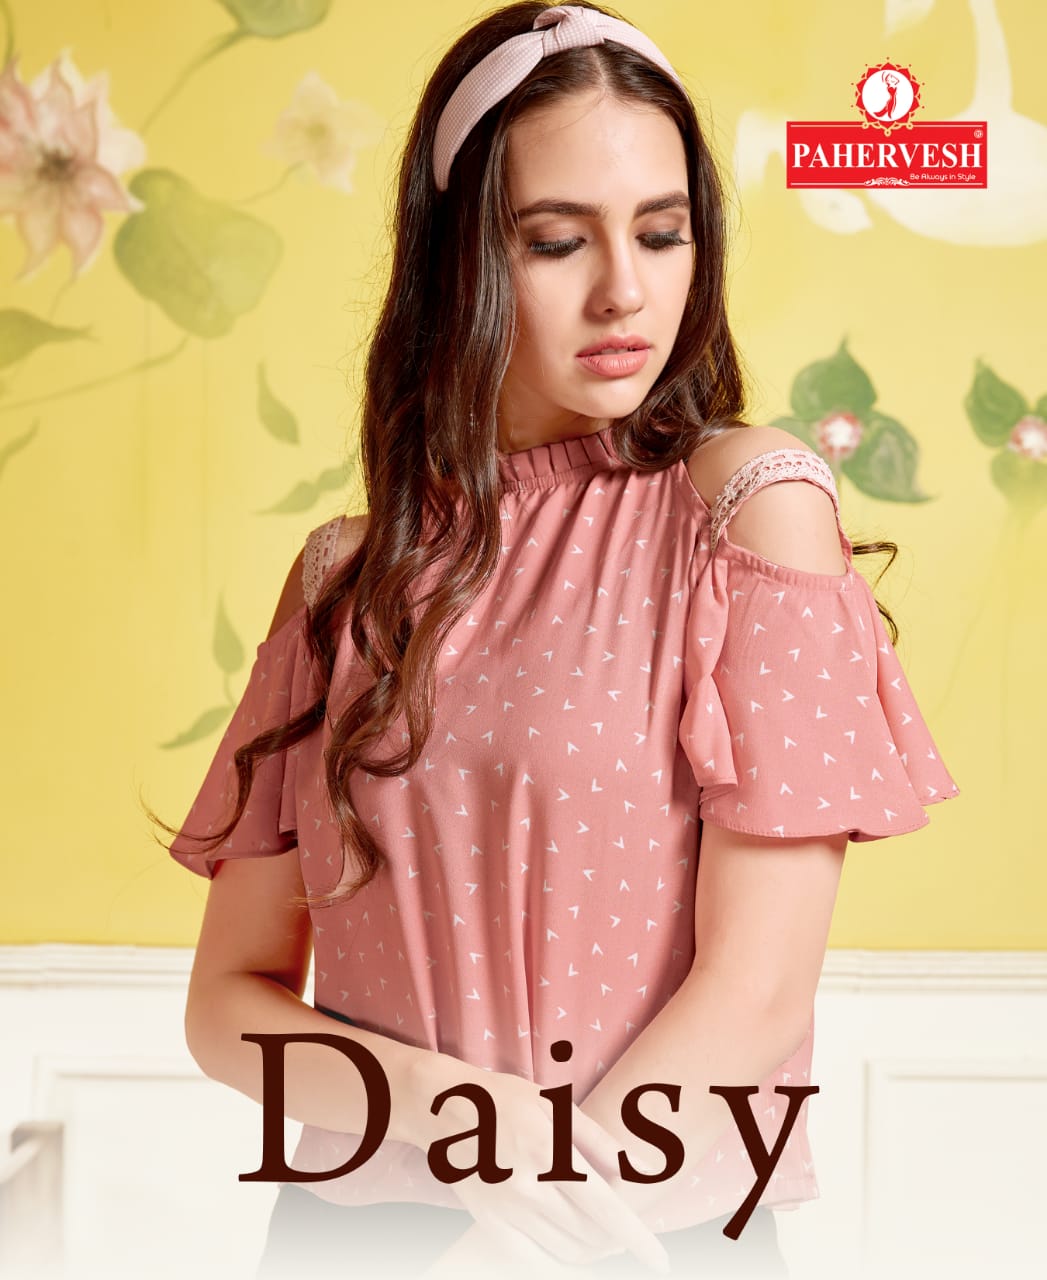 Pahervesh Daisy innovative style Beautifull Western tops